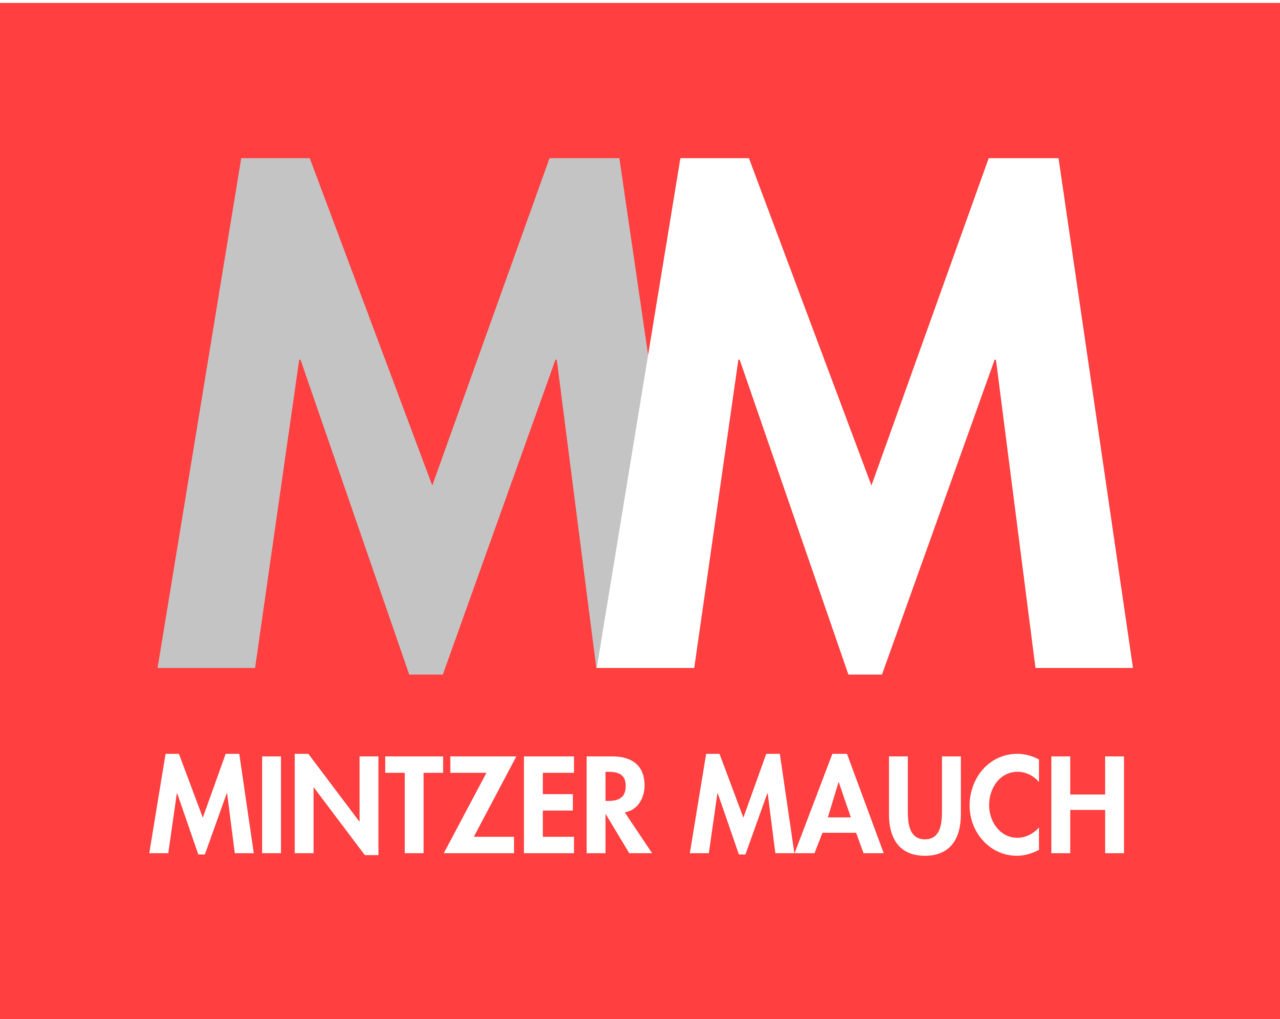 Mintzer